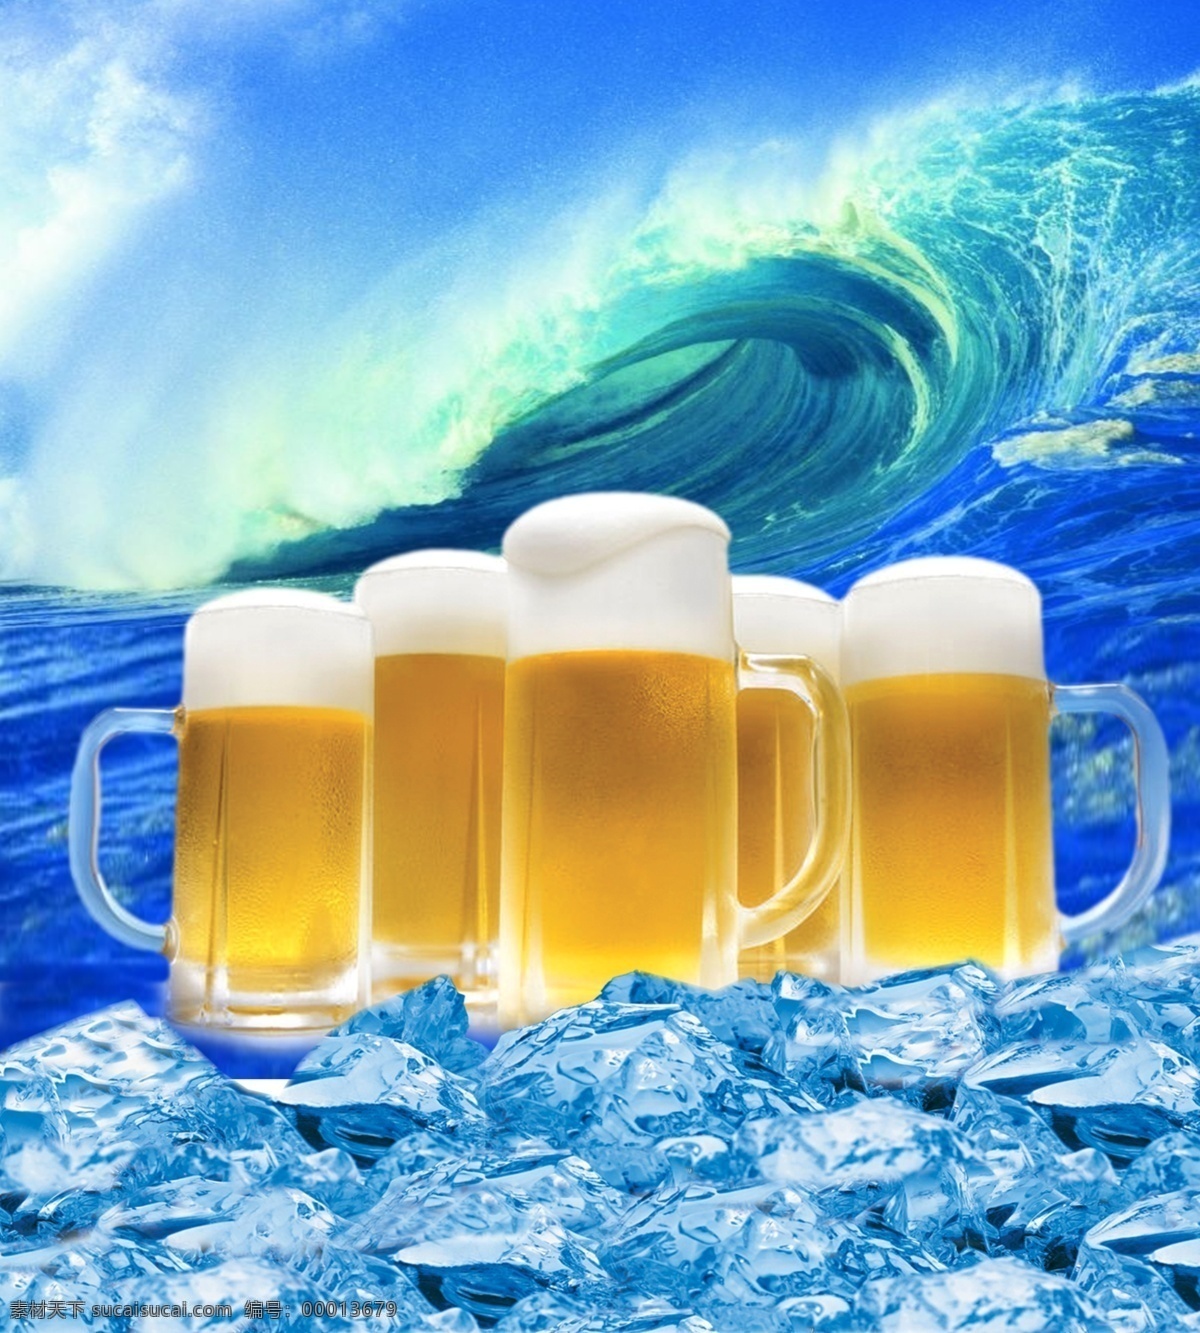 分层 冰块 冰爽 海浪 蓝色 泡沫 啤酒 啤酒杯 模板下载 啤酒海浪 设计psd 源文件